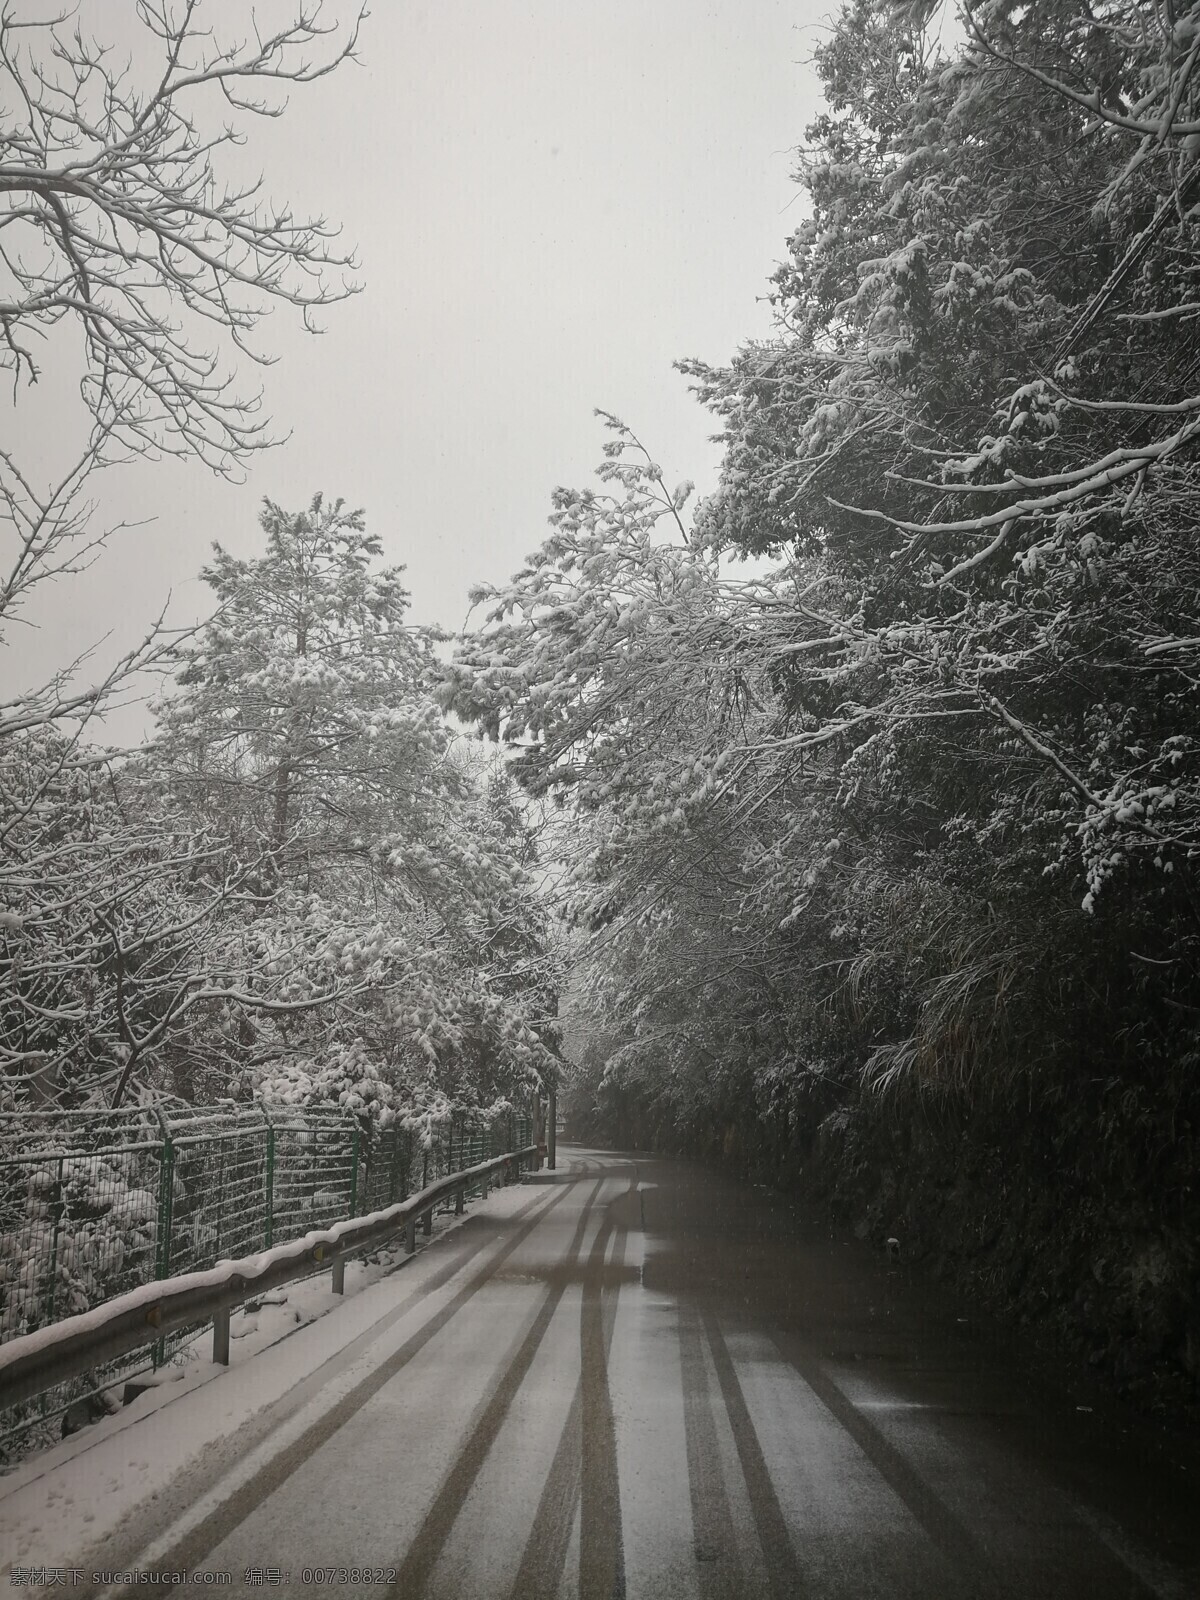 大雪 雾 朦胧 树林 雪景 雪松 雪 国道 路 雪路 大雪封山 树荫 车景 隧道 自然景观 自然风景